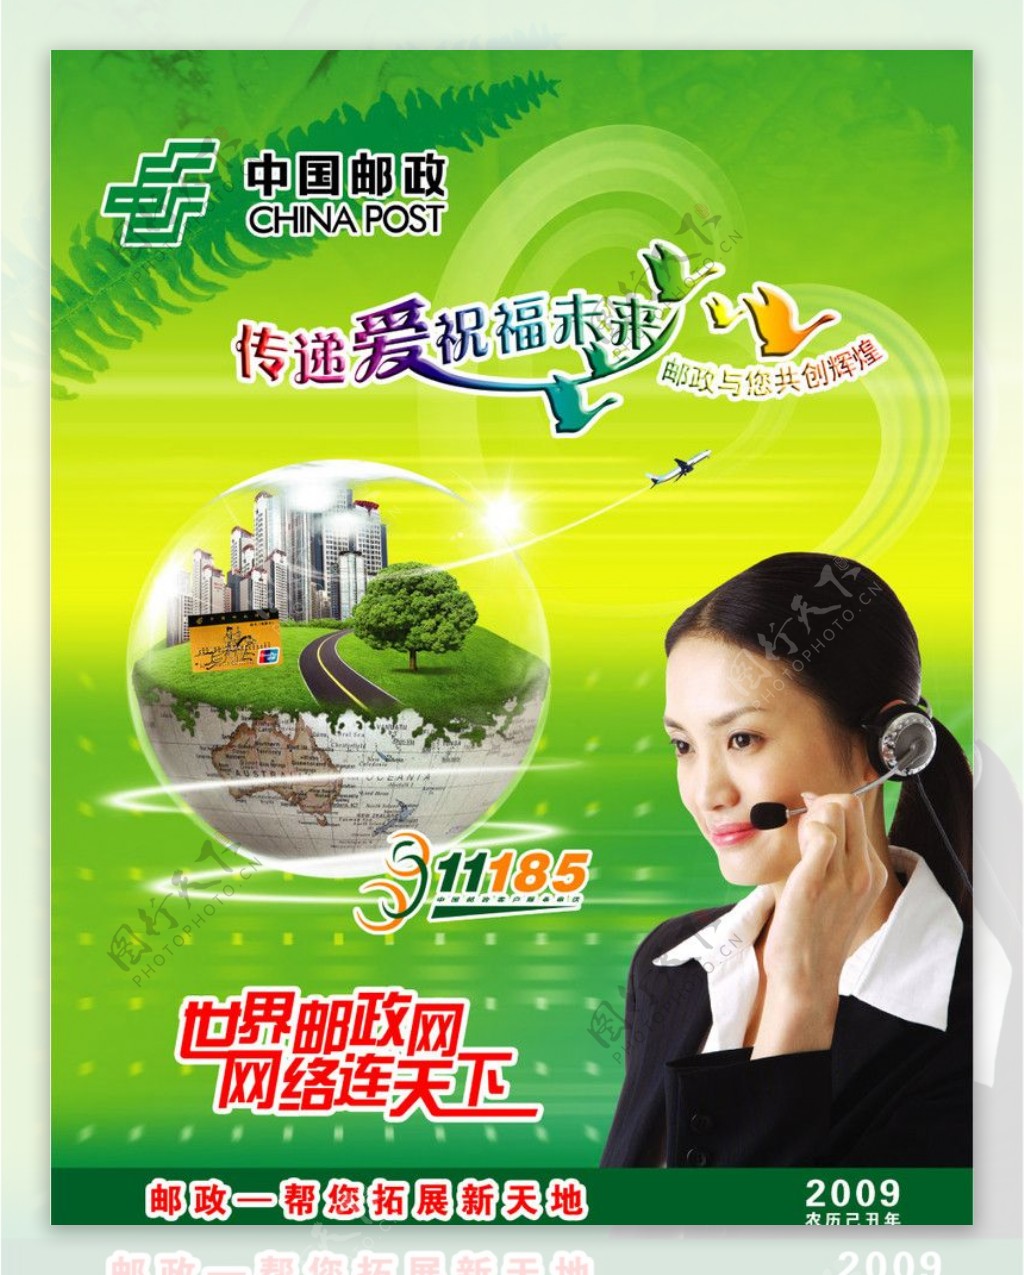 中国邮政客服11185宣传广告图片